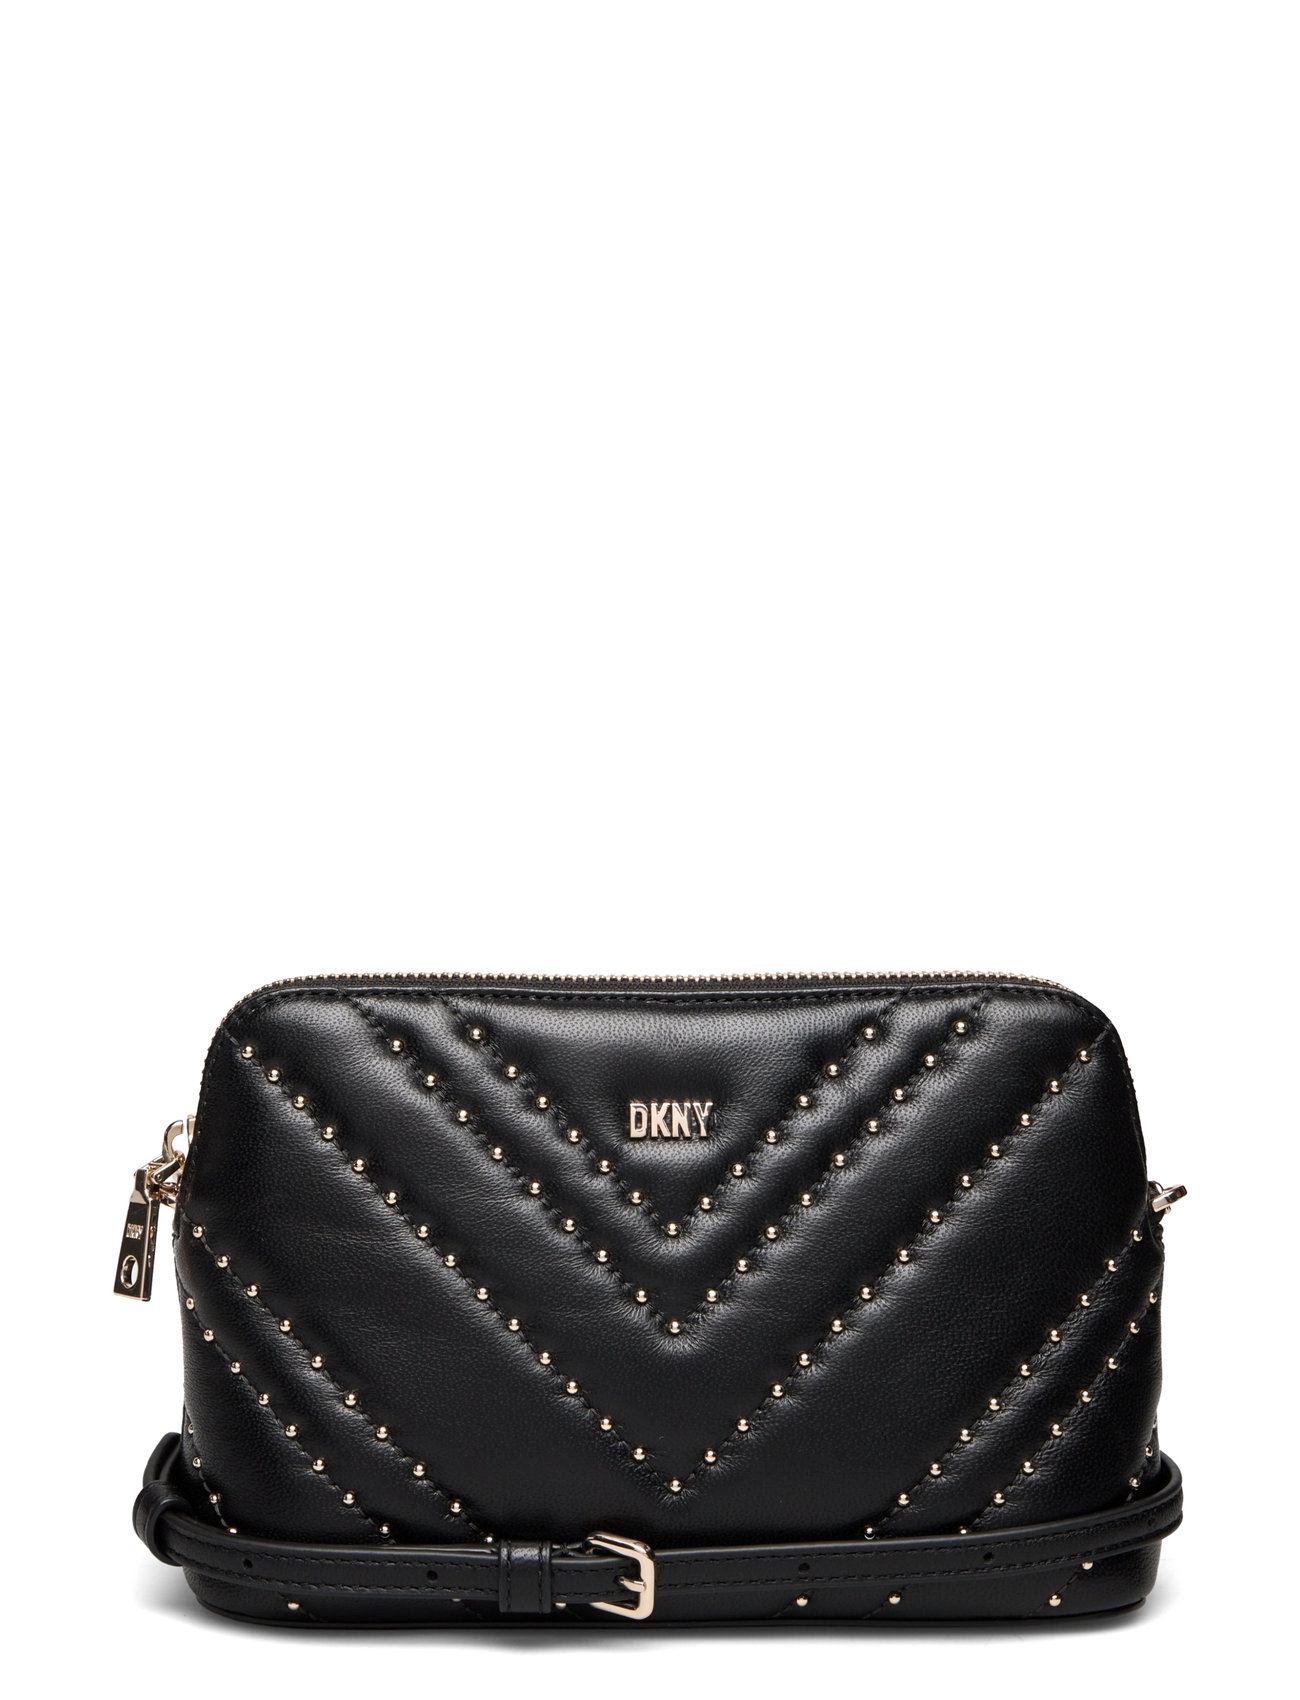 DKNY Bags Handbag - Shoulder bags - Boozt.com